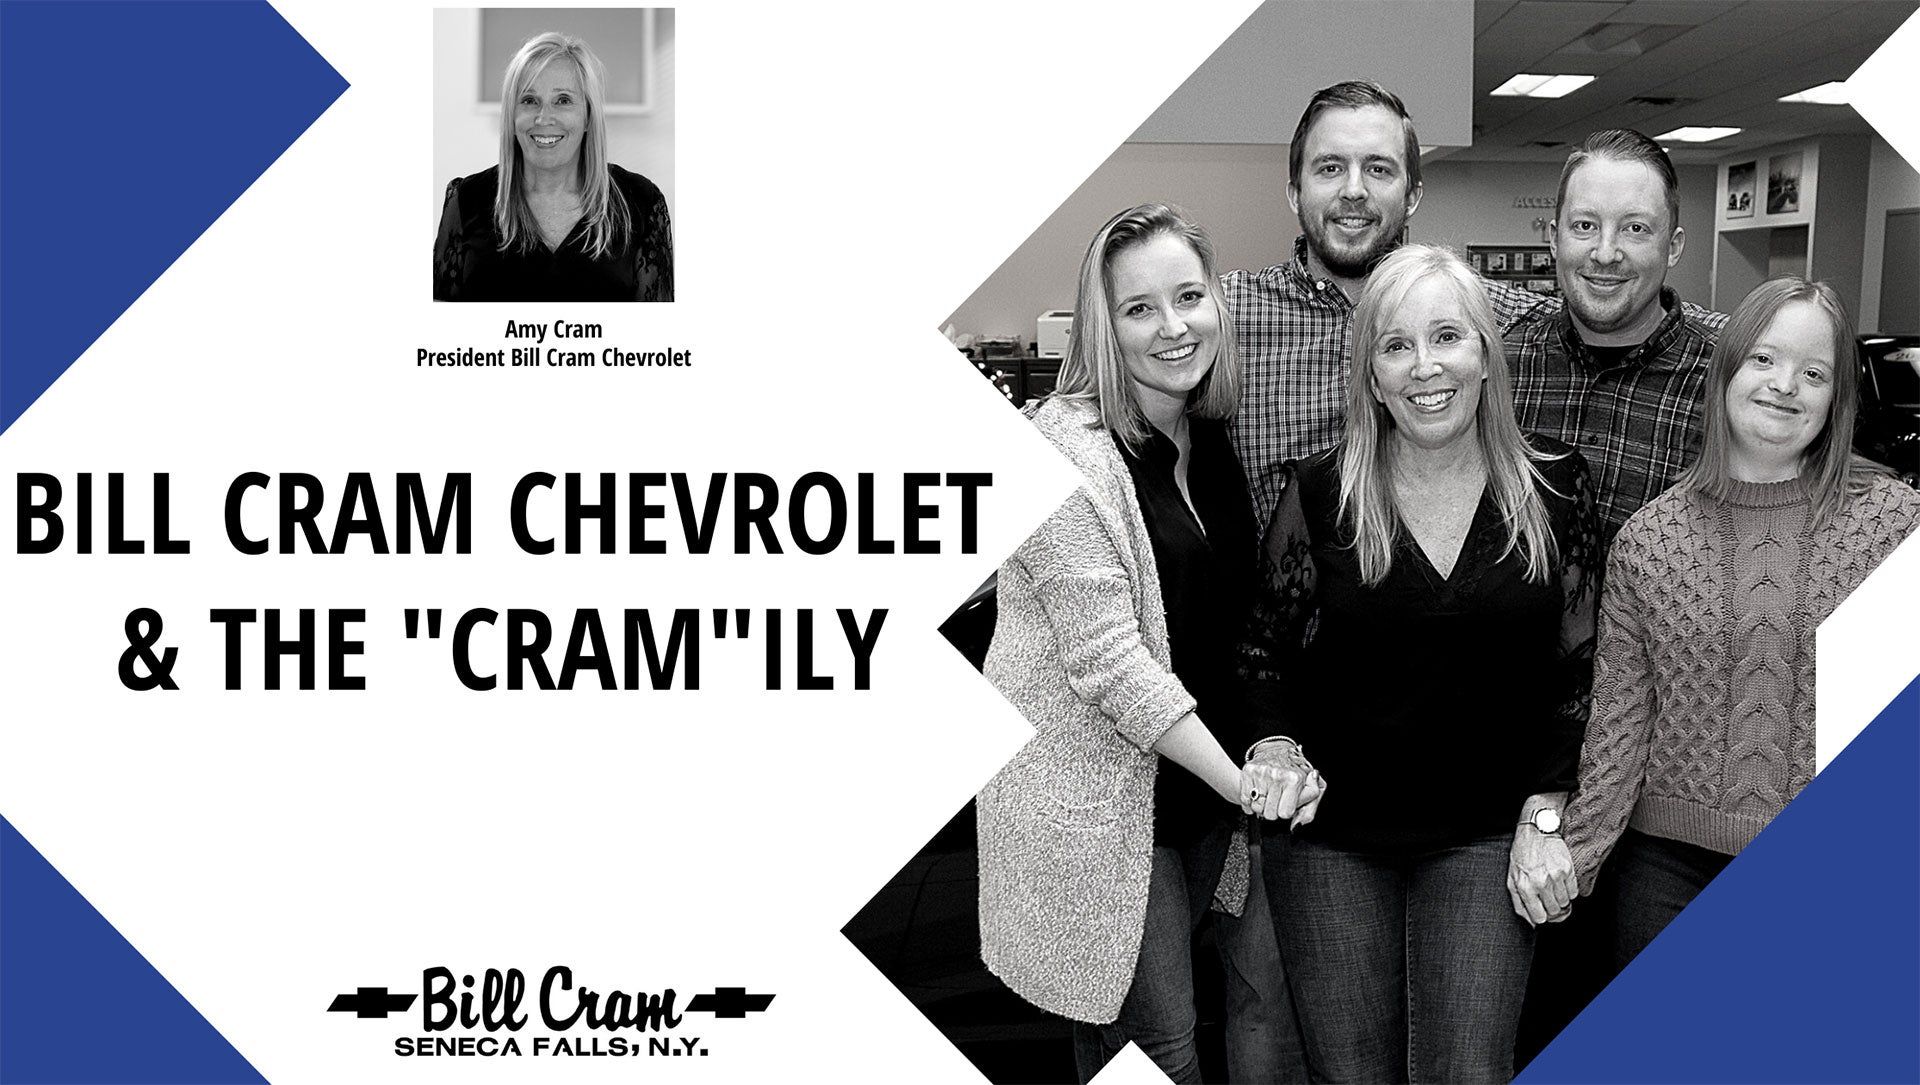 Bill Cram Chevrolet